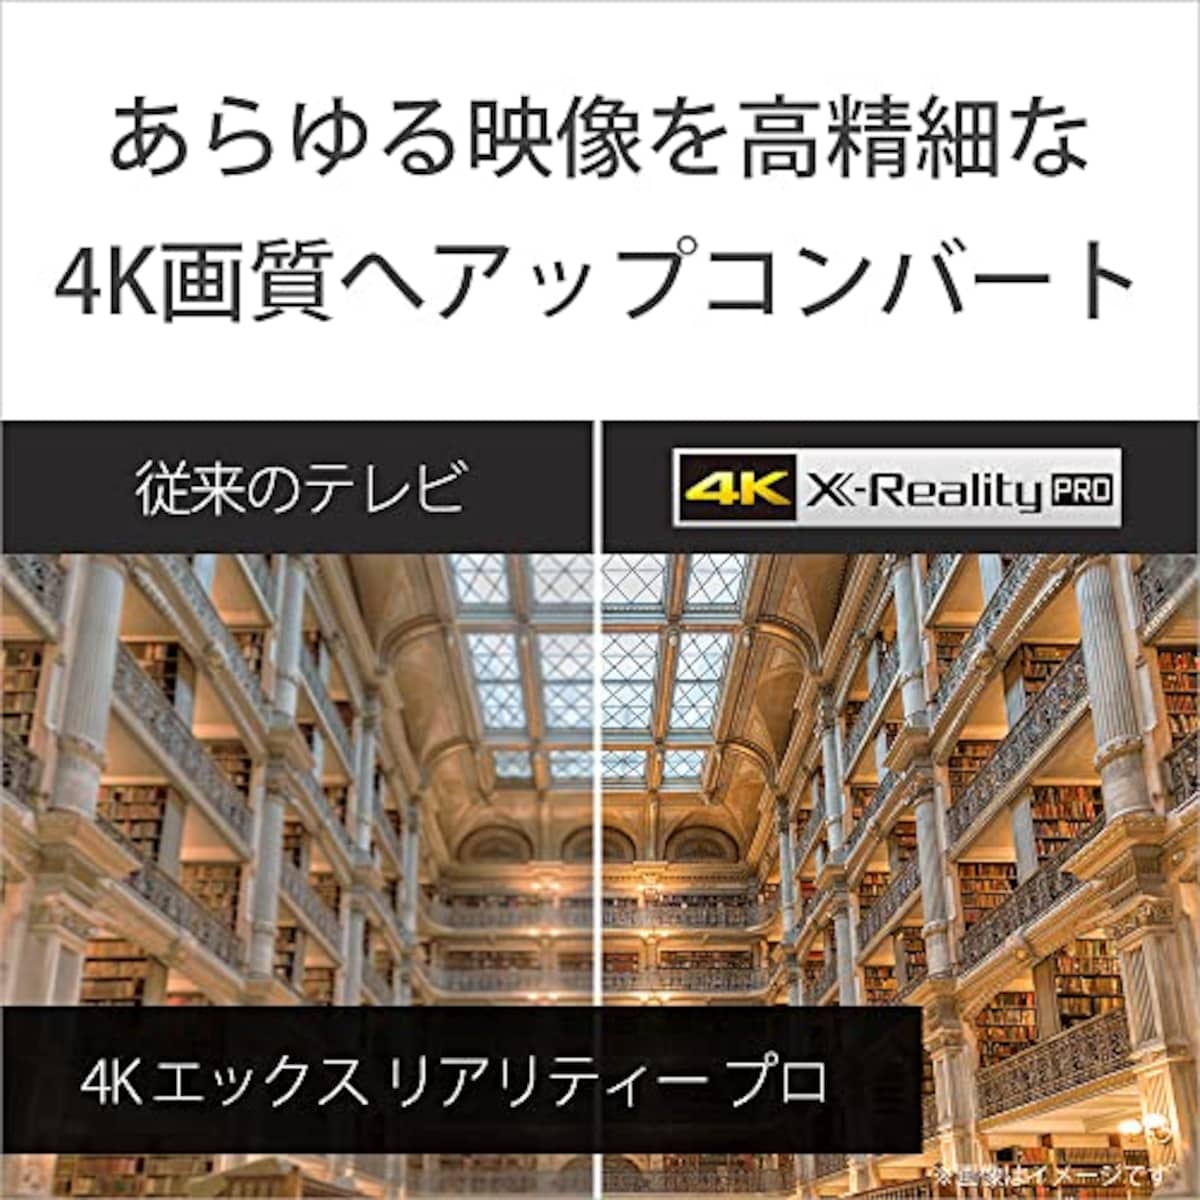  ソニー 50V型 4K X80WKシリーズ 液晶 テレビ ブラビア KJ-50X80WK Google TV Dolby Atmos対応 6畳以上推奨 2022年モデル画像7 